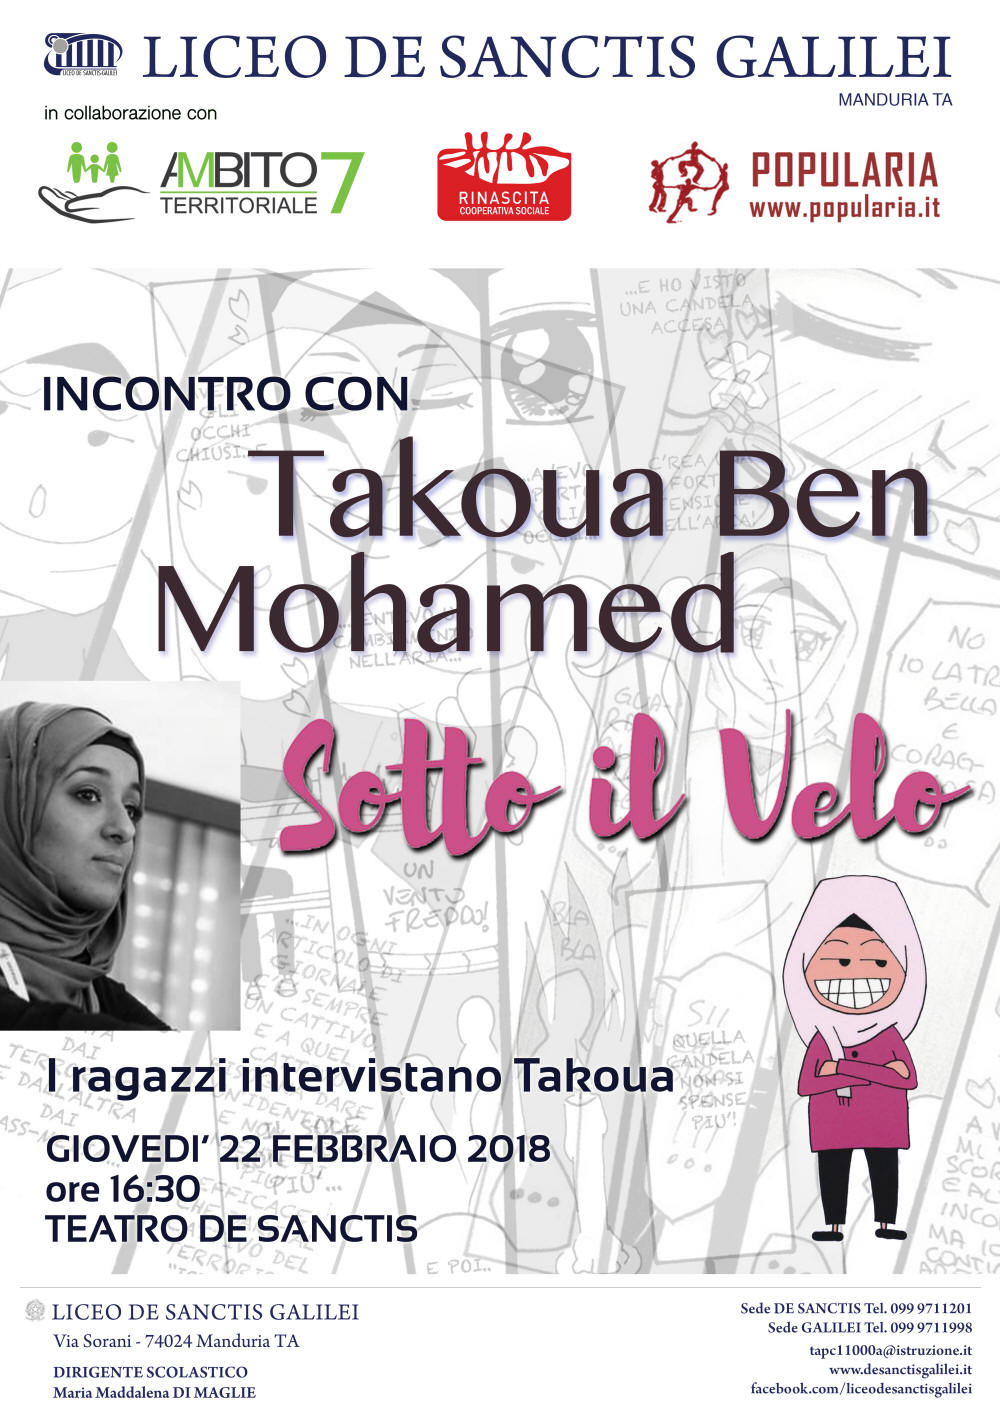 MANDURIA. Takoua Ben Mohamed, il fumetto e l’ironia per il dialogo tra culture per l’integrazione